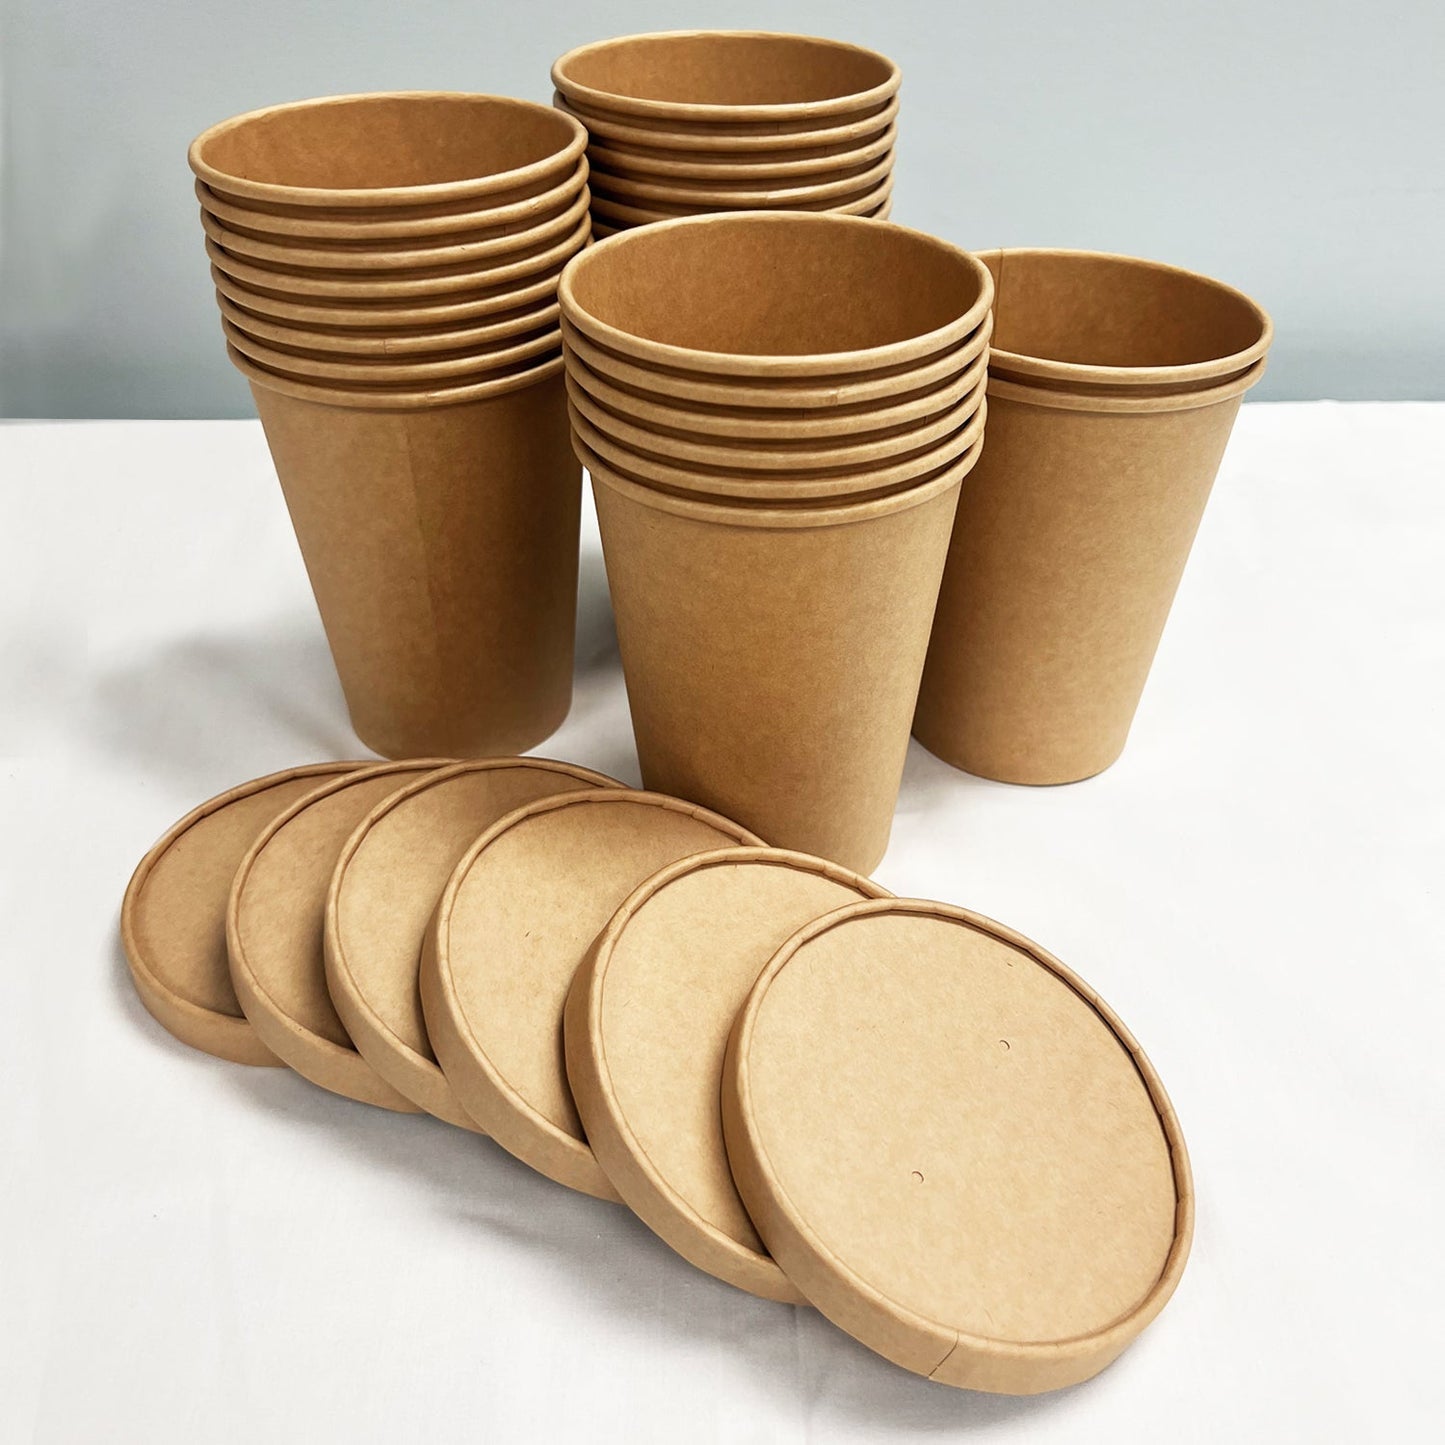 50 Sets/500 Sets, 32oz, 960ml, Paper Soup Cup, with Paper Lid